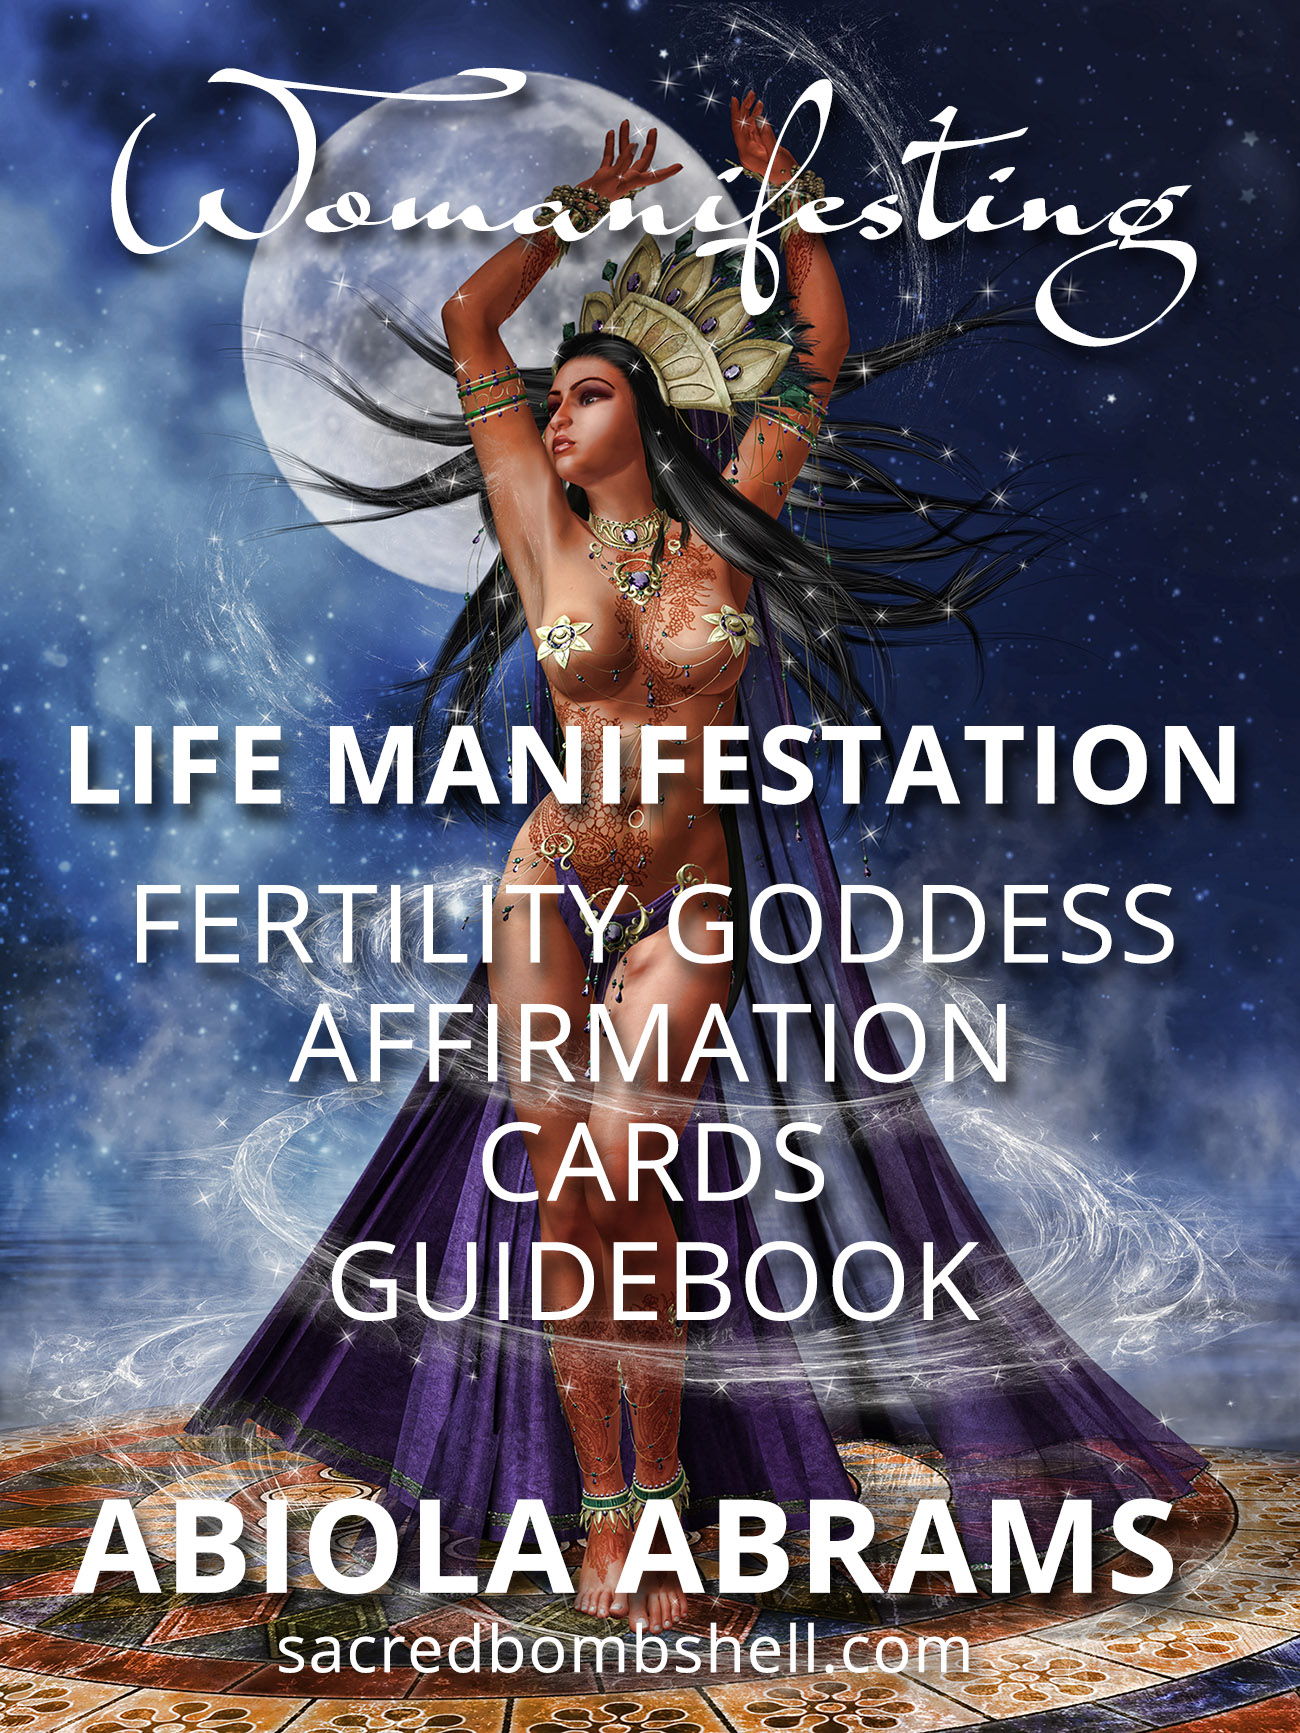 Goddess Affirmation Cards Guidebook